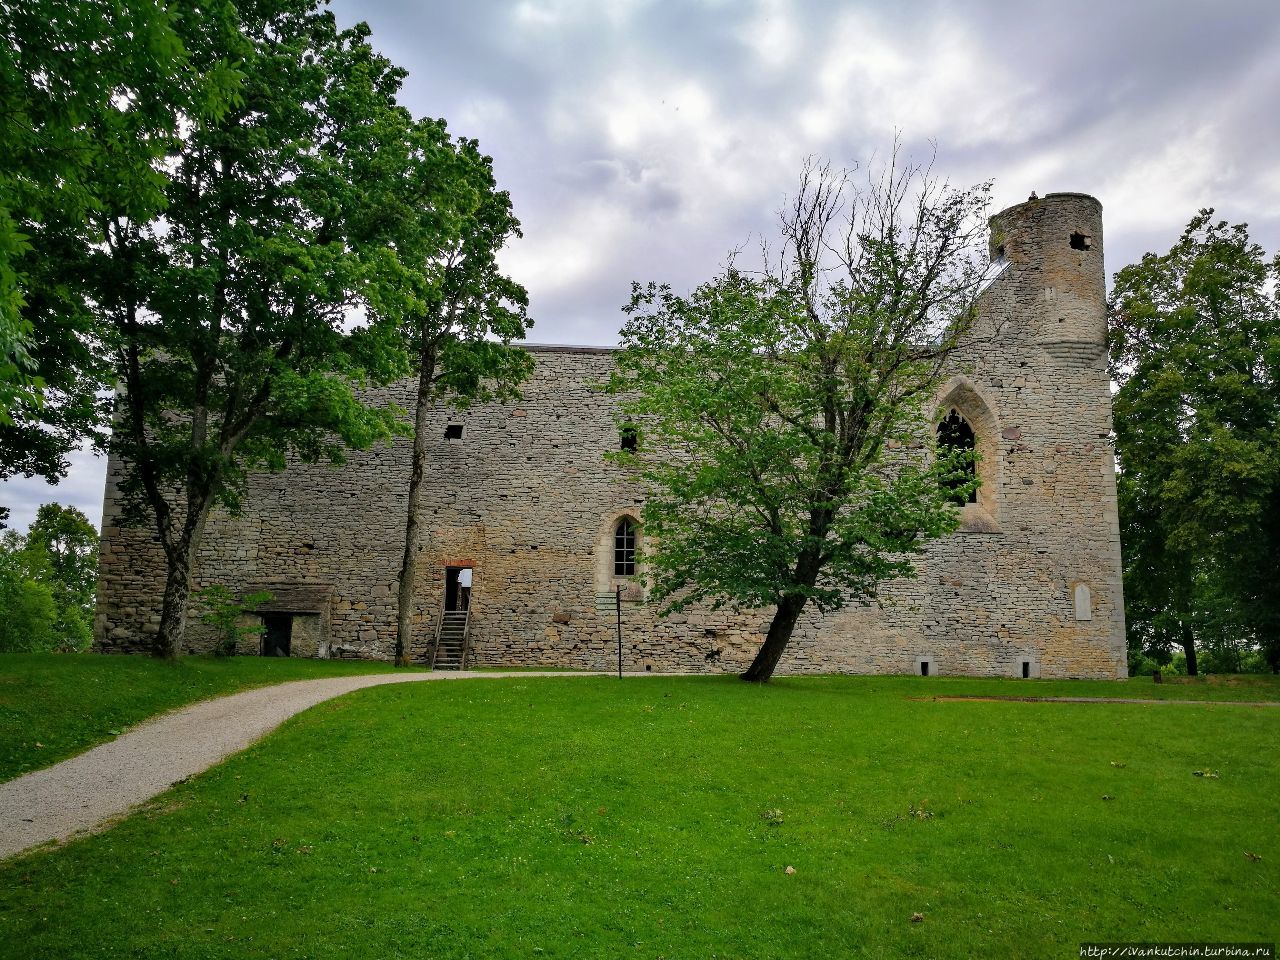 Дрозды, карьер и монастырь Падизе, Эстония